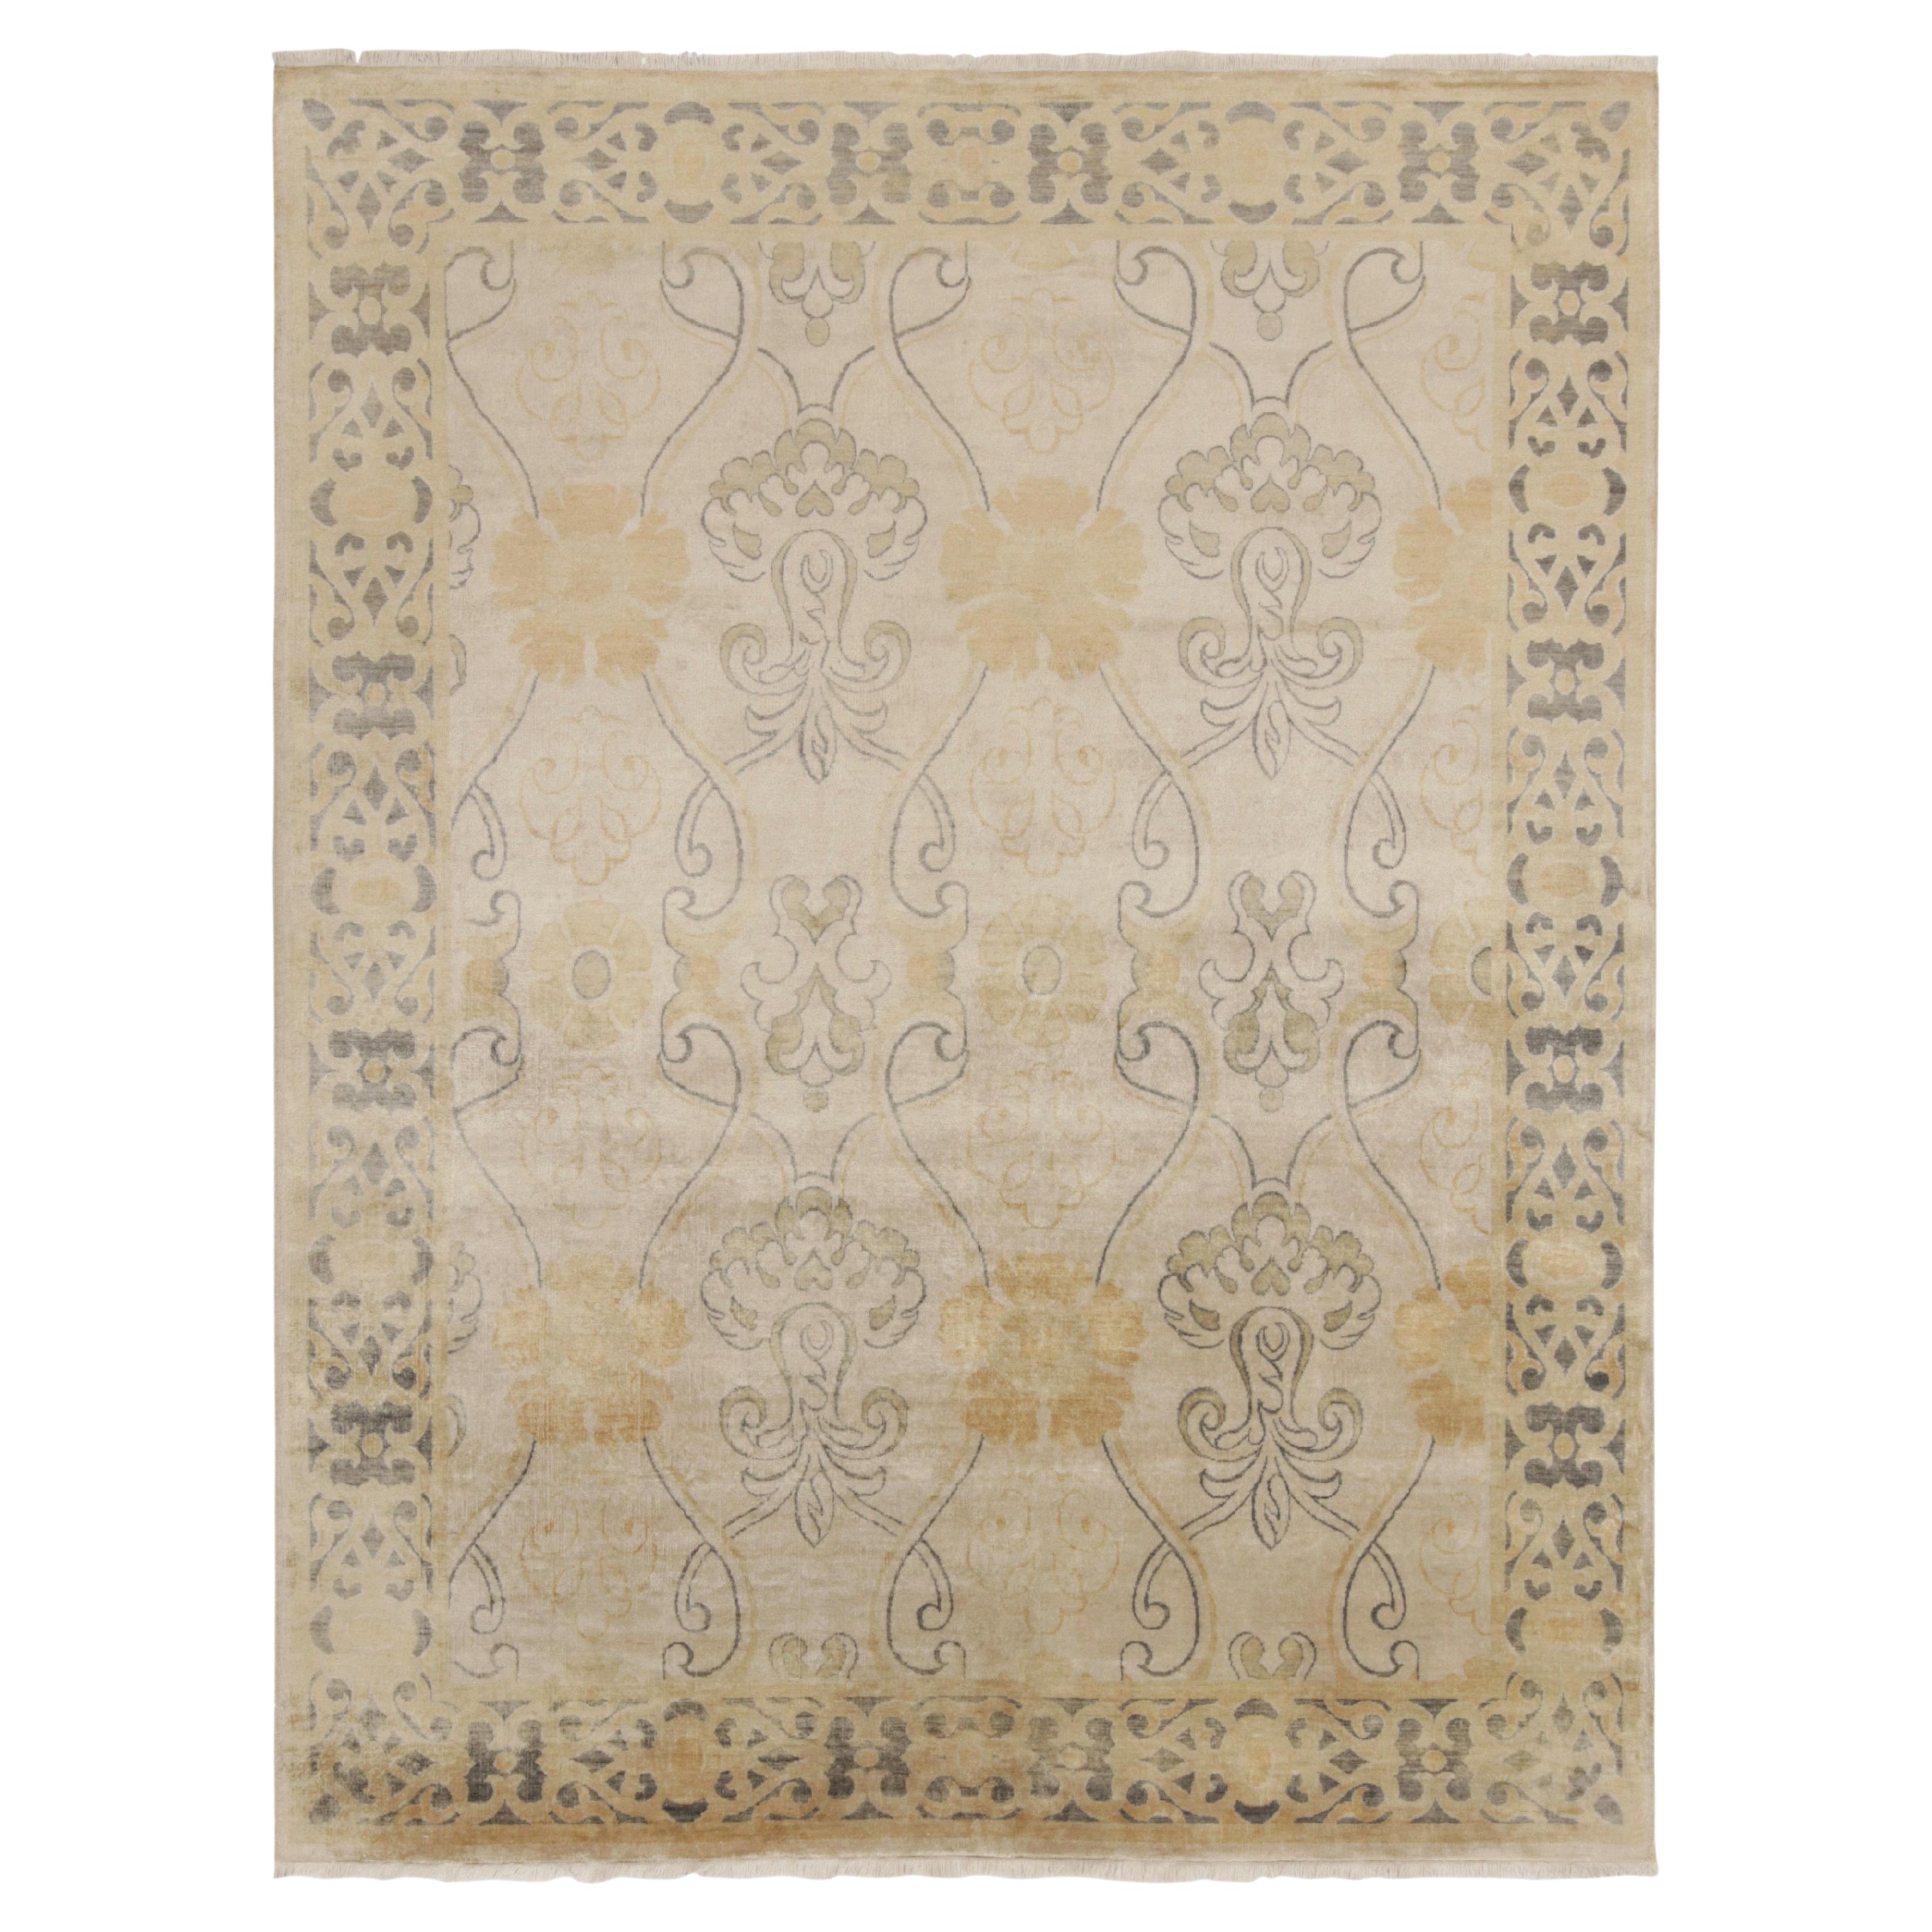 Teppich & Kilims Art nouveau-Stil-Teppich in Beige mit goldenen Spalier-Blumenmustern